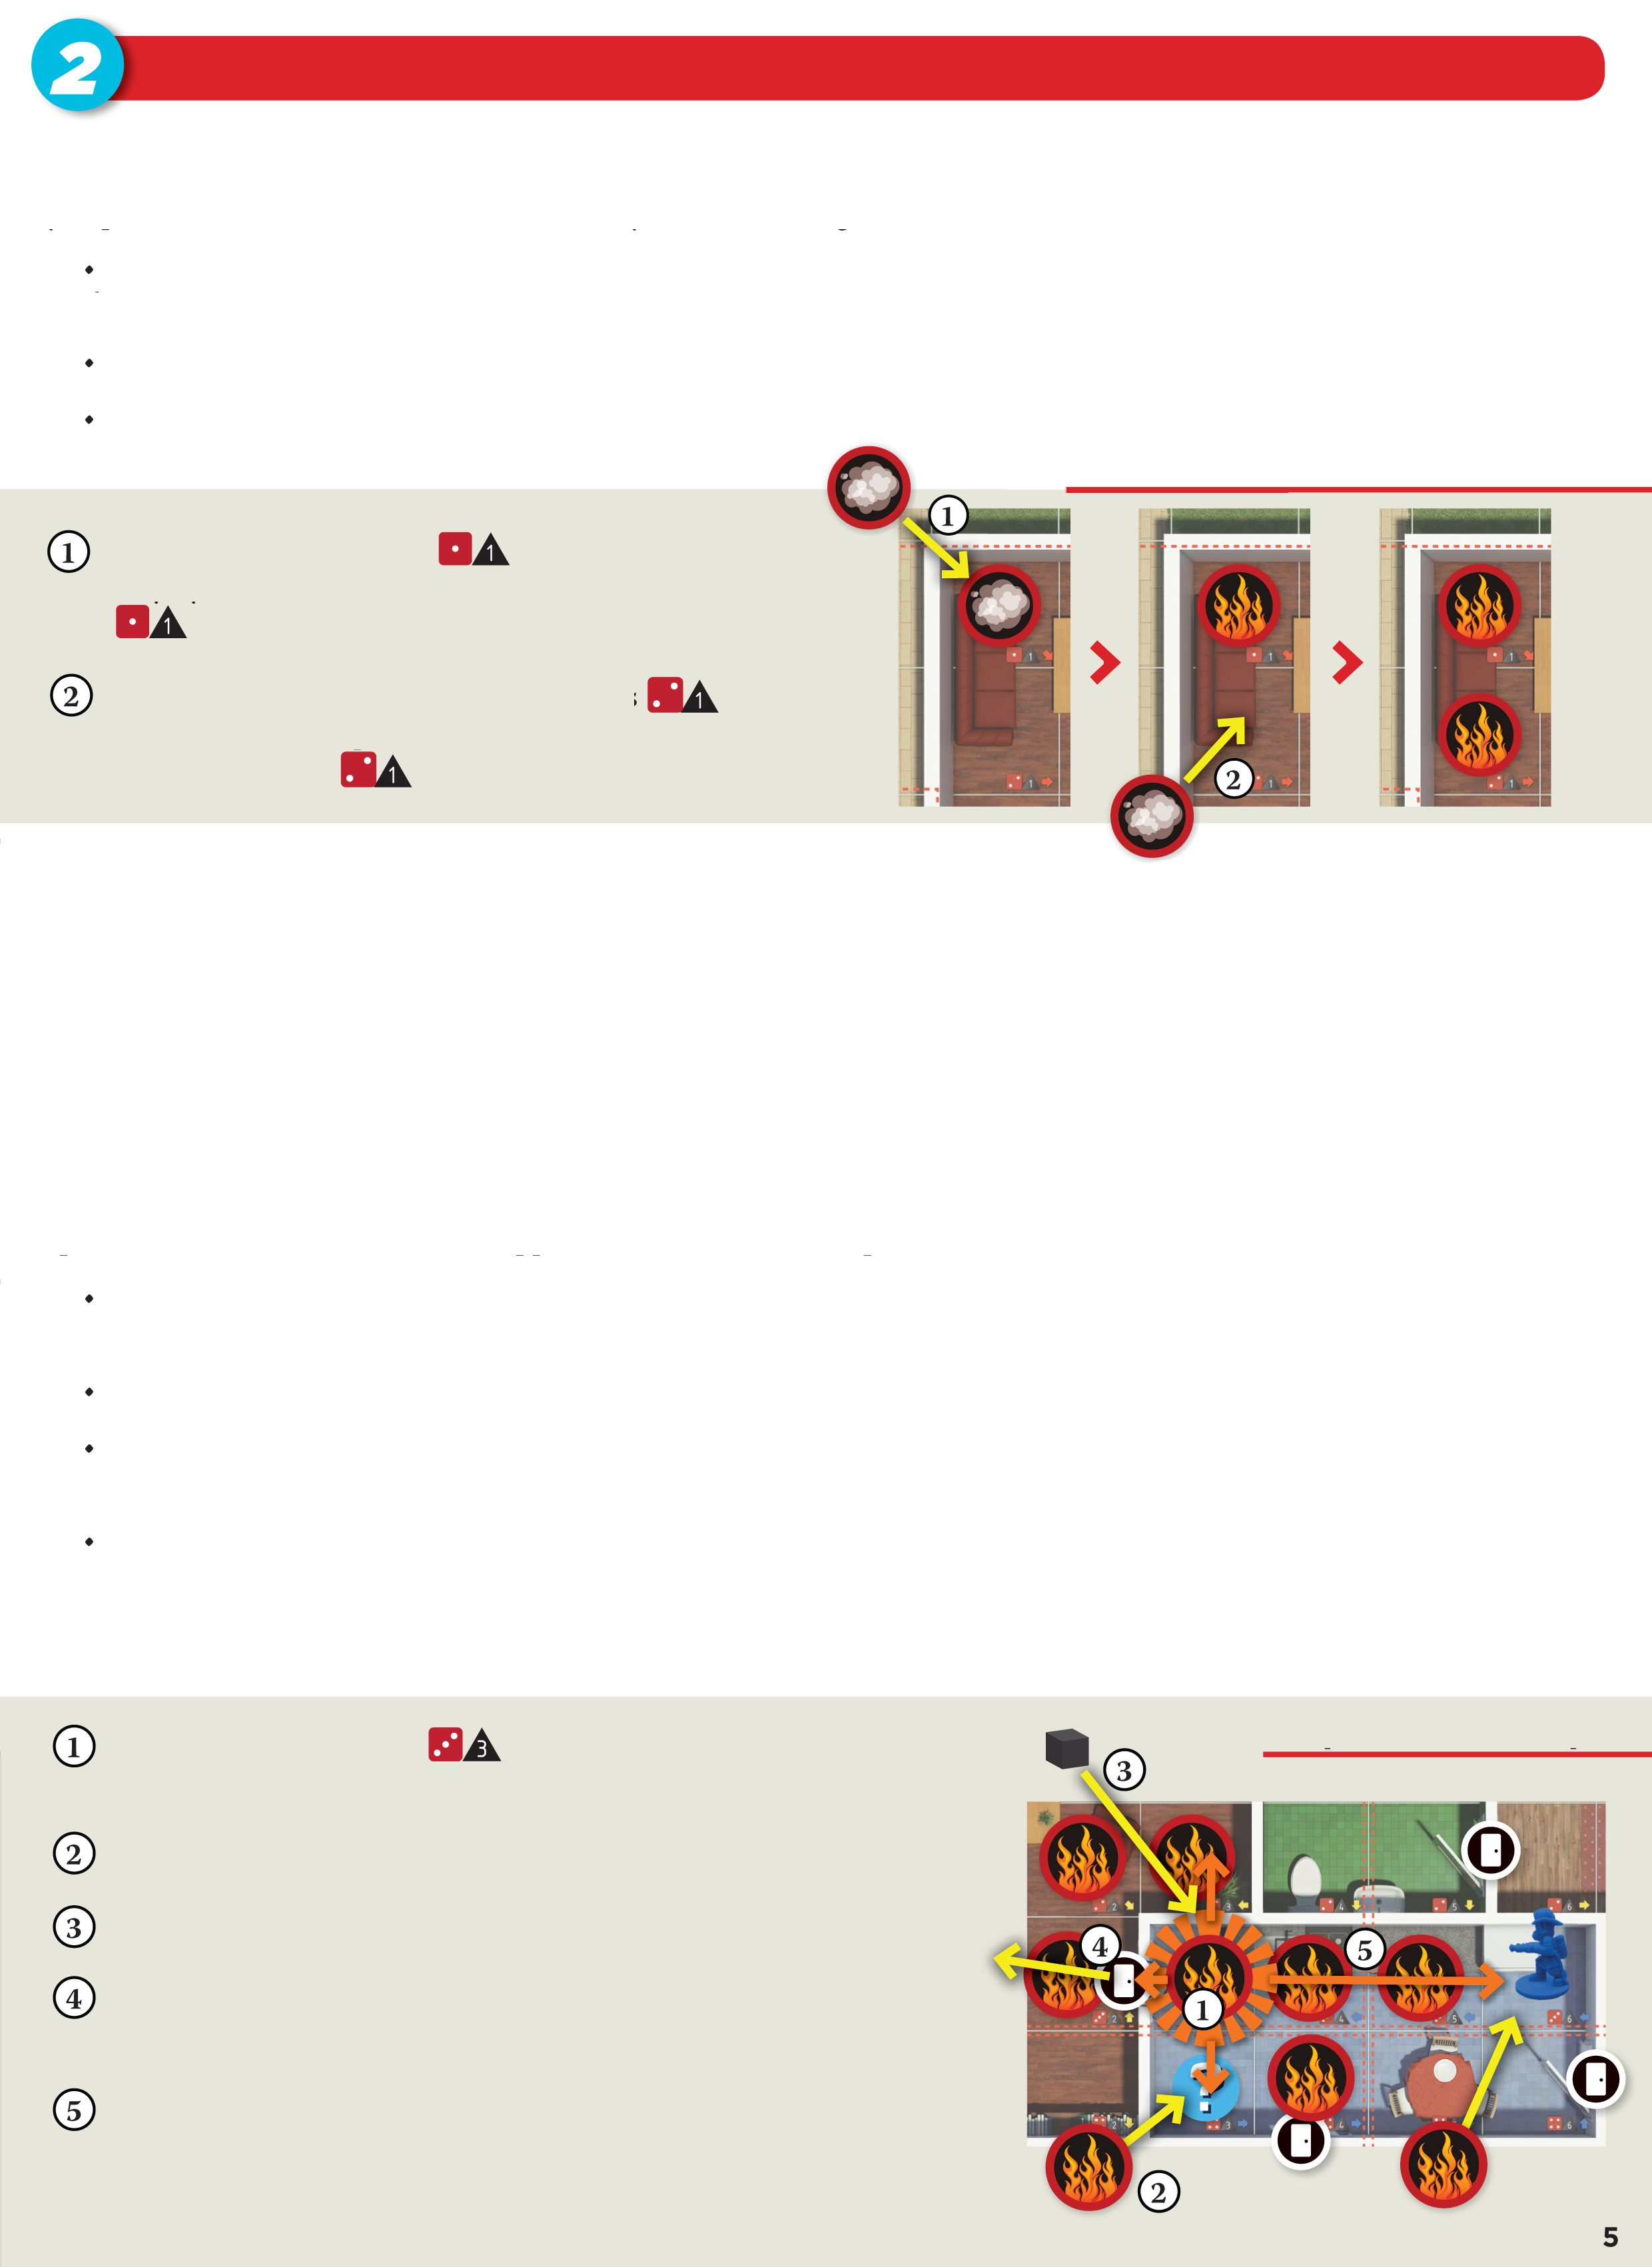 Εξάπλωση της Φωτιάς Μετά την εκτέλεση των ενεργειών, ο ενεργός παίκτης ρίχνει τα ζάρια για την Εξάπλωση της Φωτιάς.